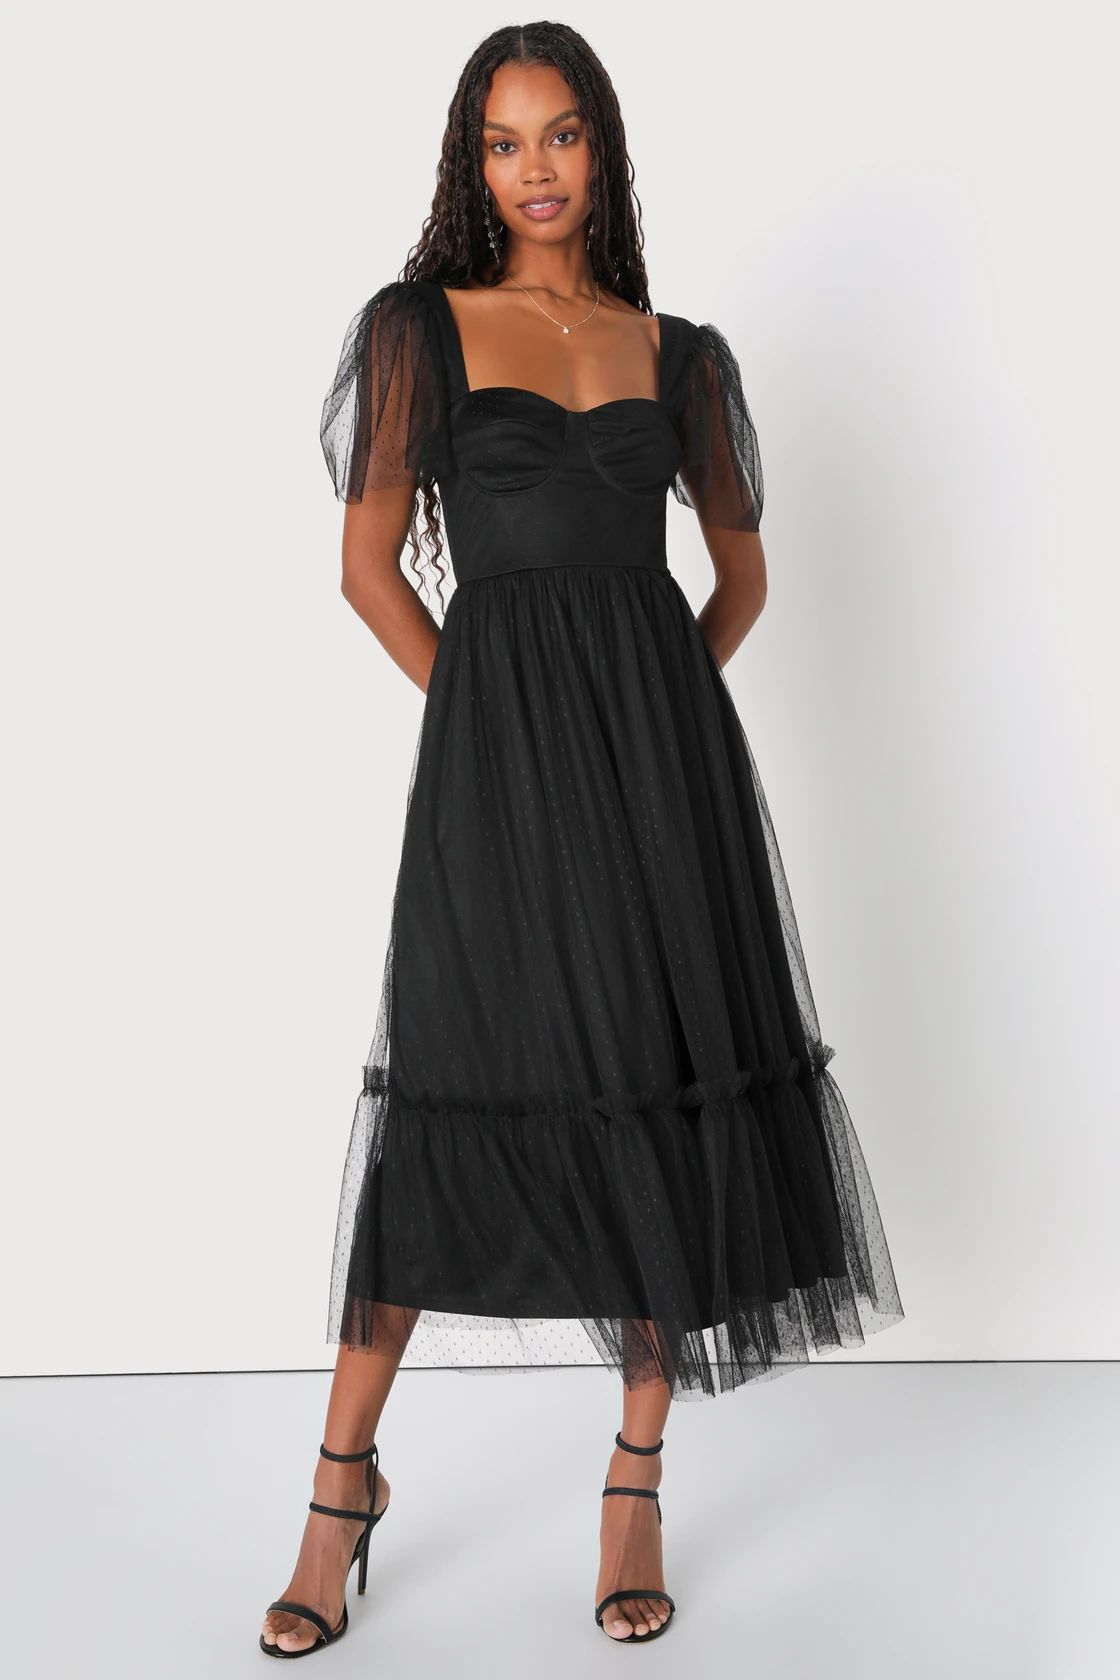 Dreamy Celebration Black Tulle Bustier Swiss Dot Midi Dress | Lulus (US)